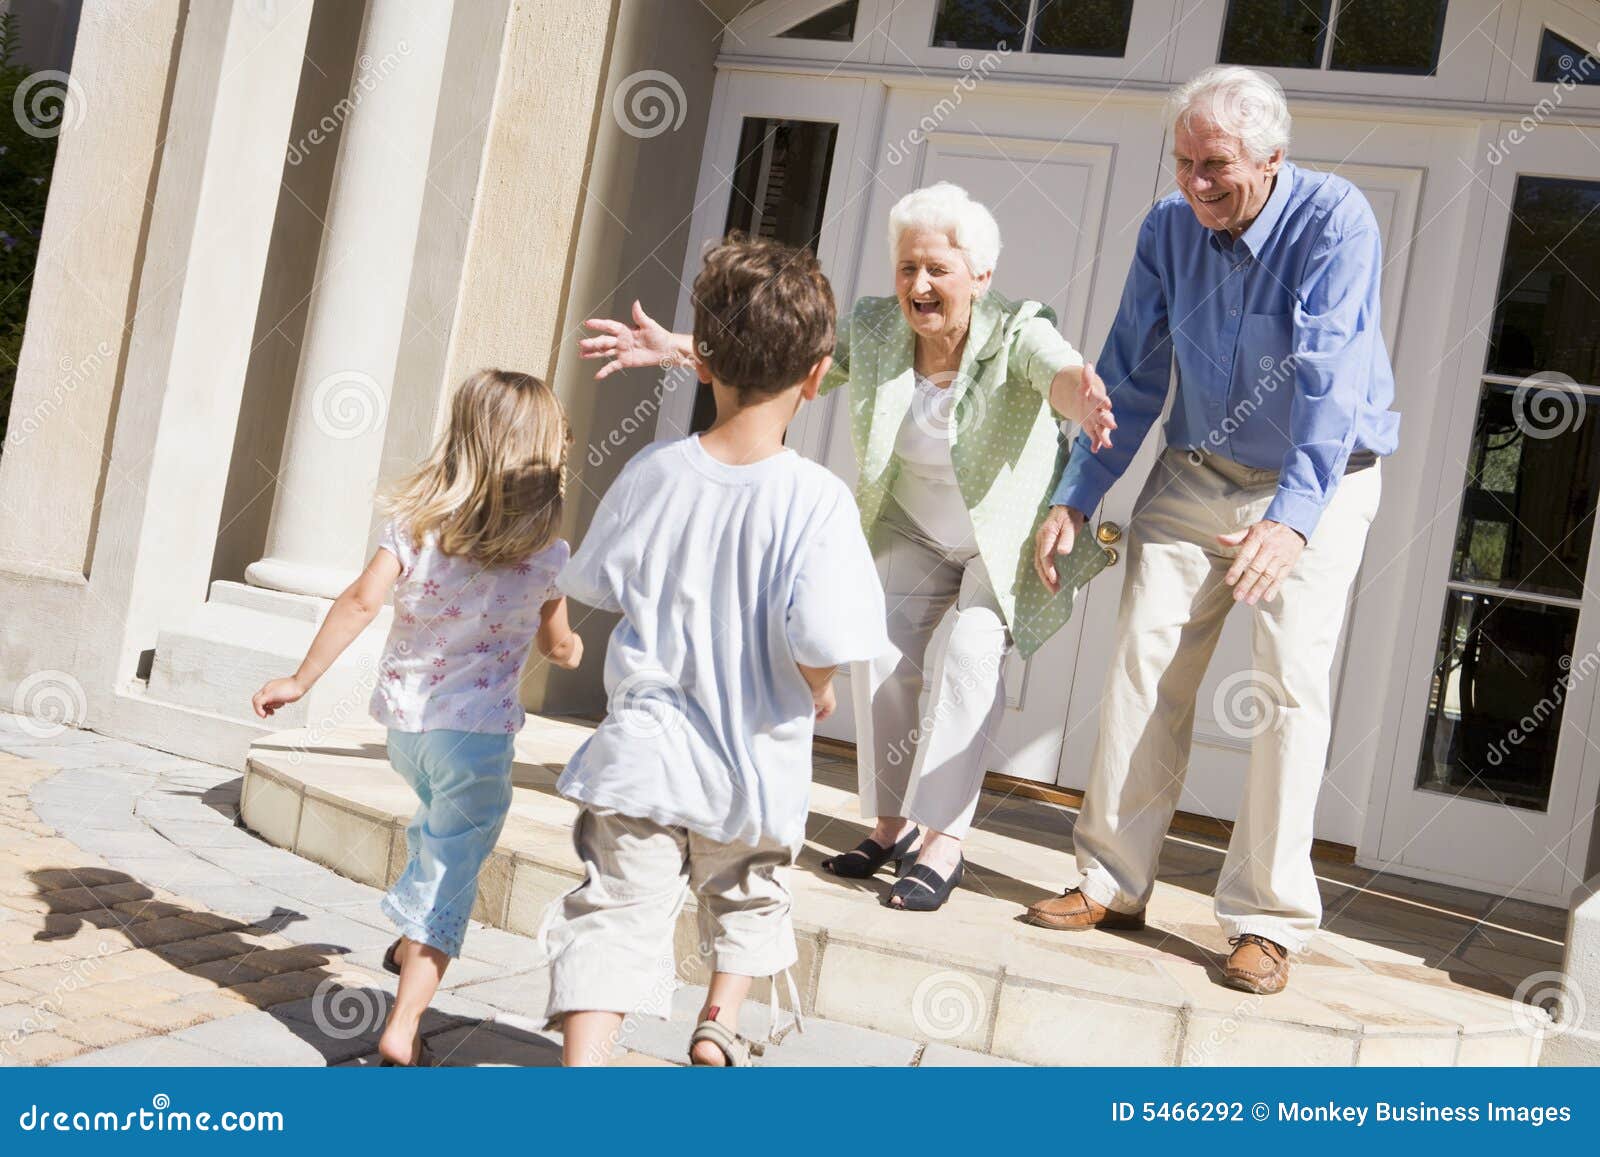 grandparents welcoming grandchildren